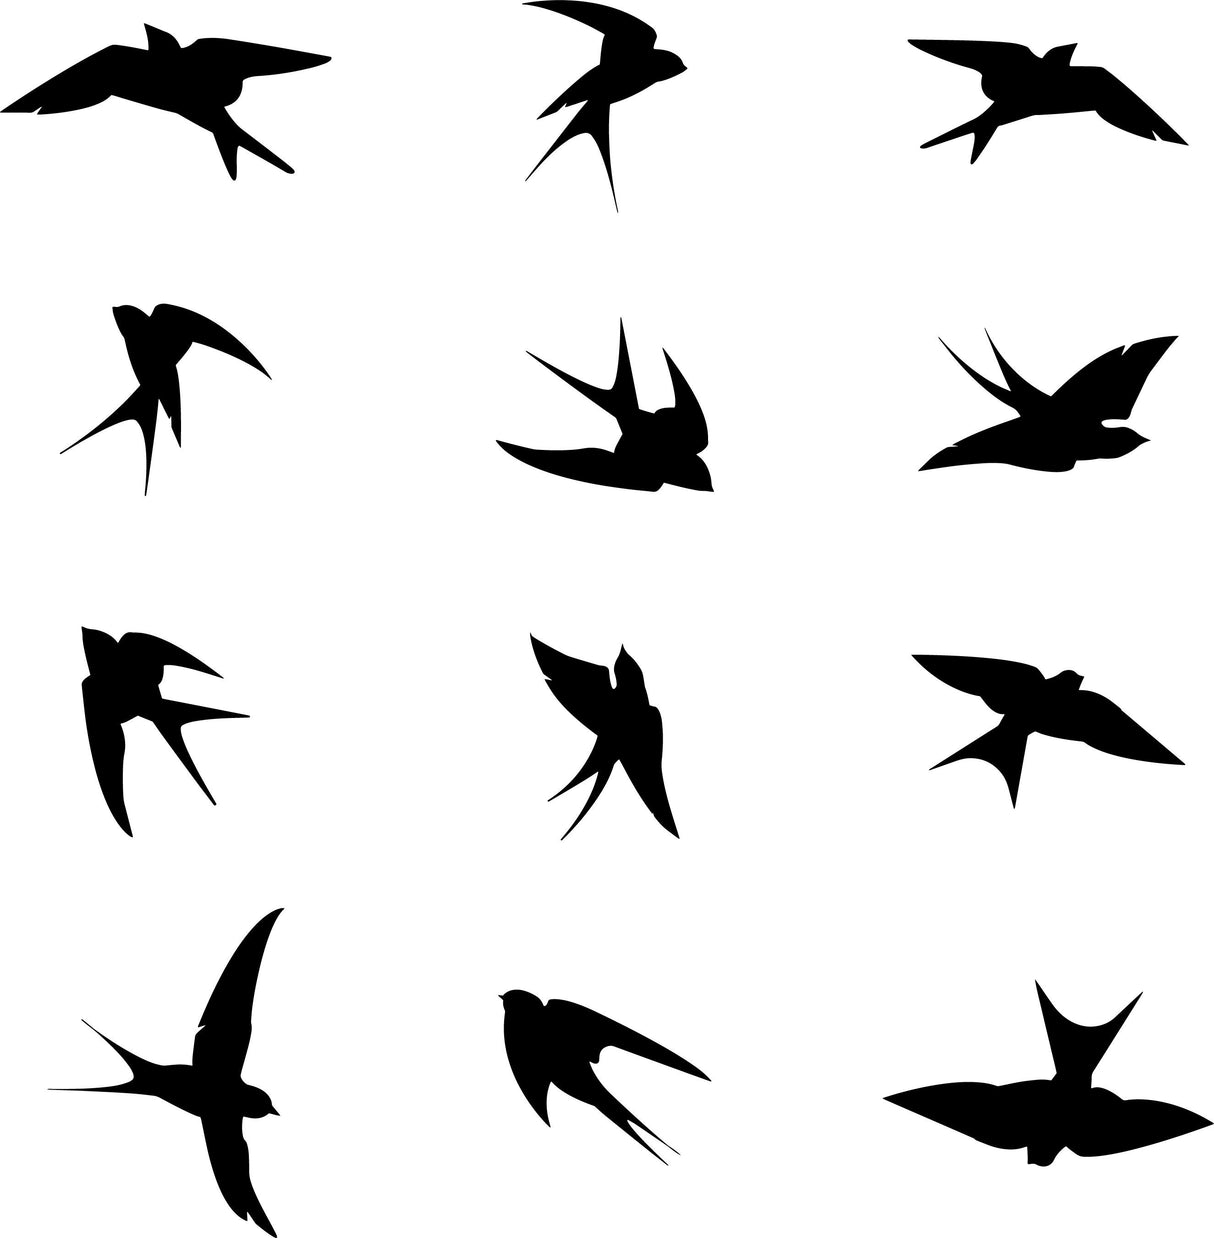 24x Anti-Collision Window Bird Stickers Decals - Protect Birds from Window Collisions - Window Stickers Against Bird Strikes *